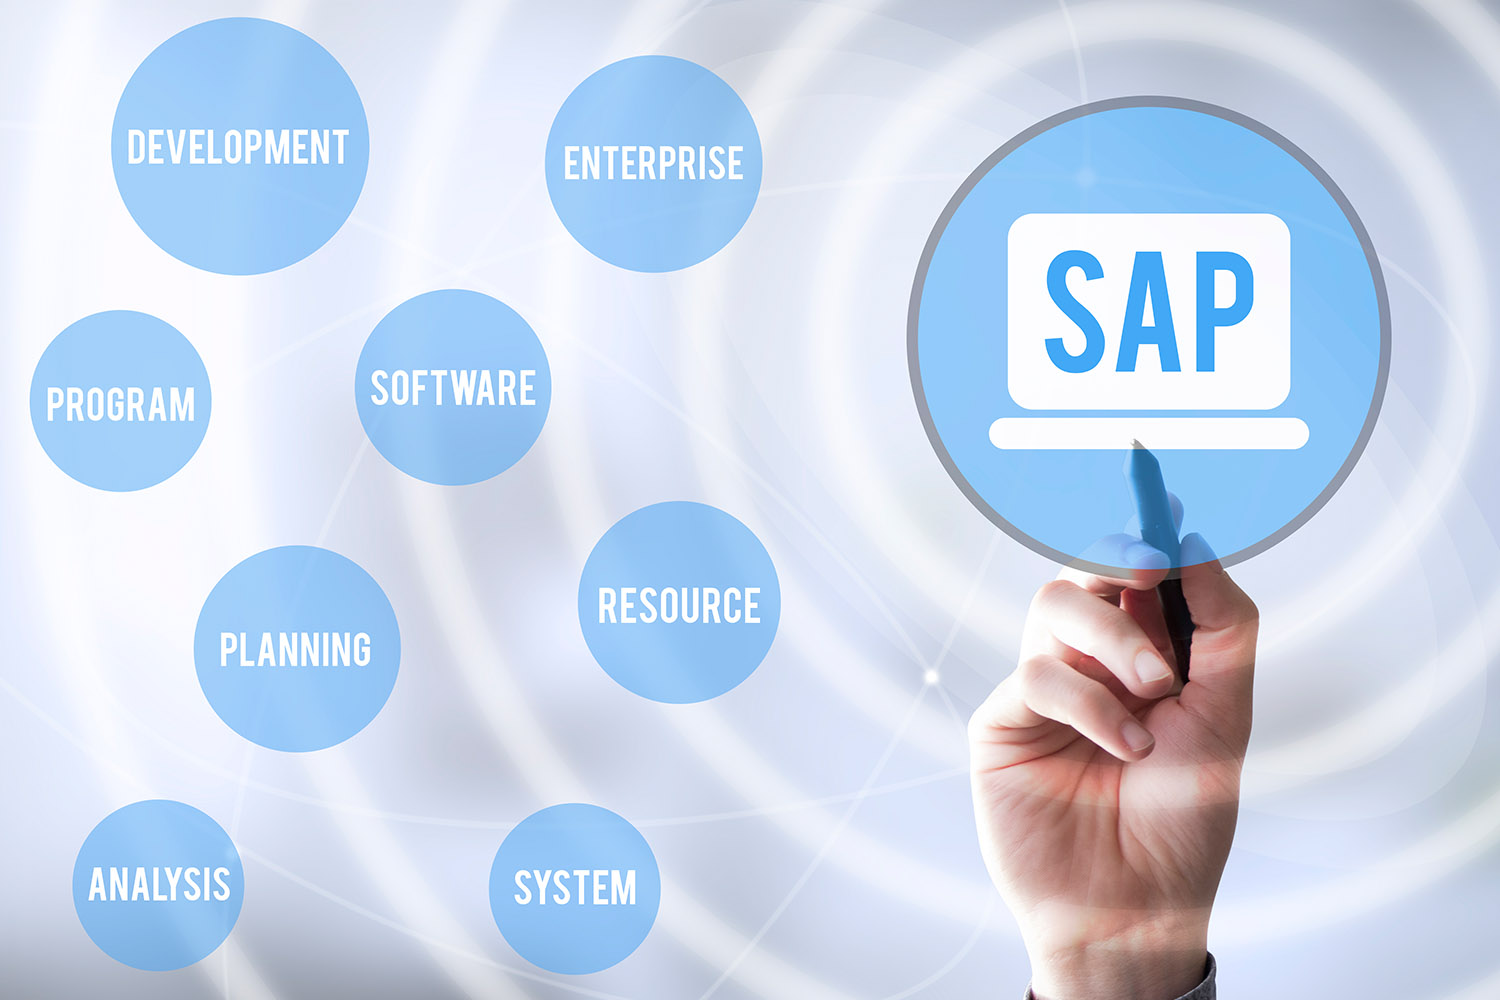 Az SAP gyorsabb ütemben fejlődik